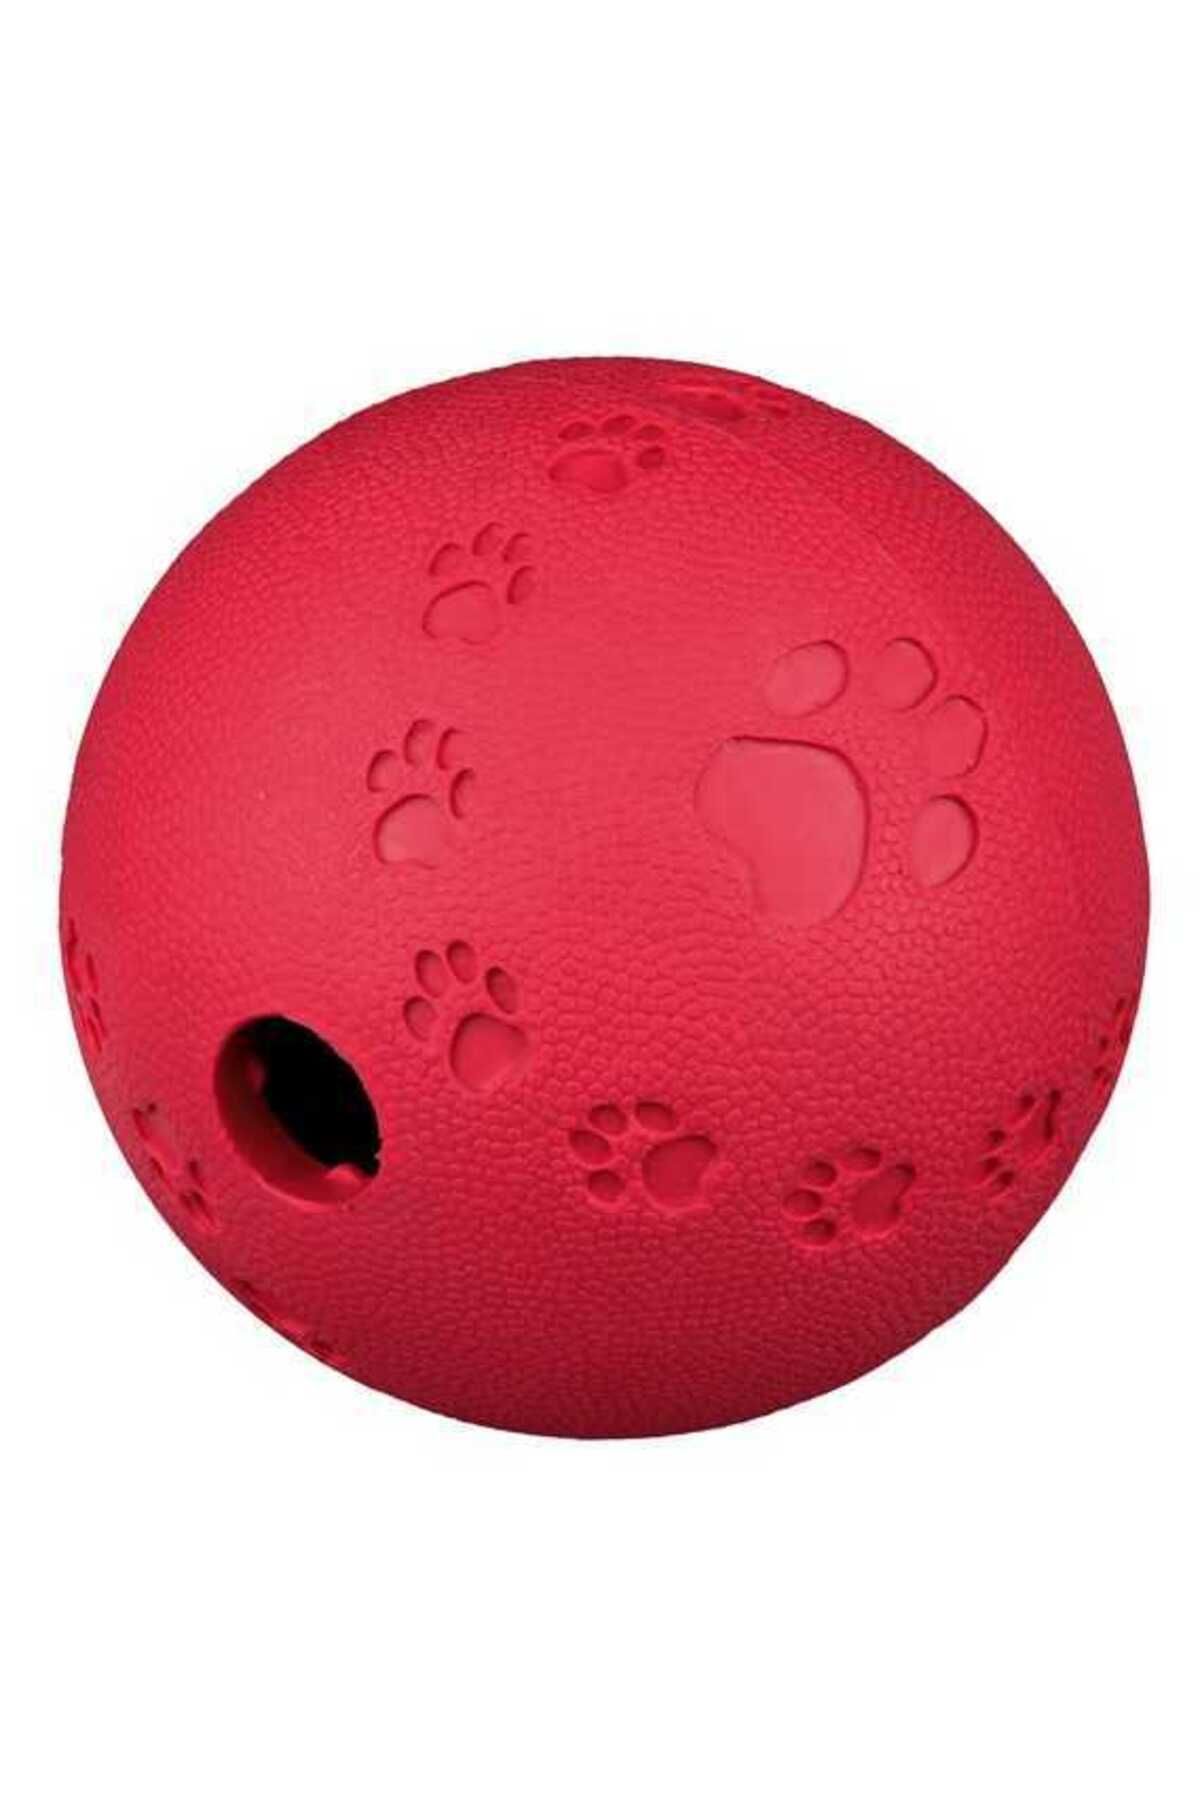 Trixie Köpek Oyuncağı Ödüllü Kauçuk Top 6cm 132070